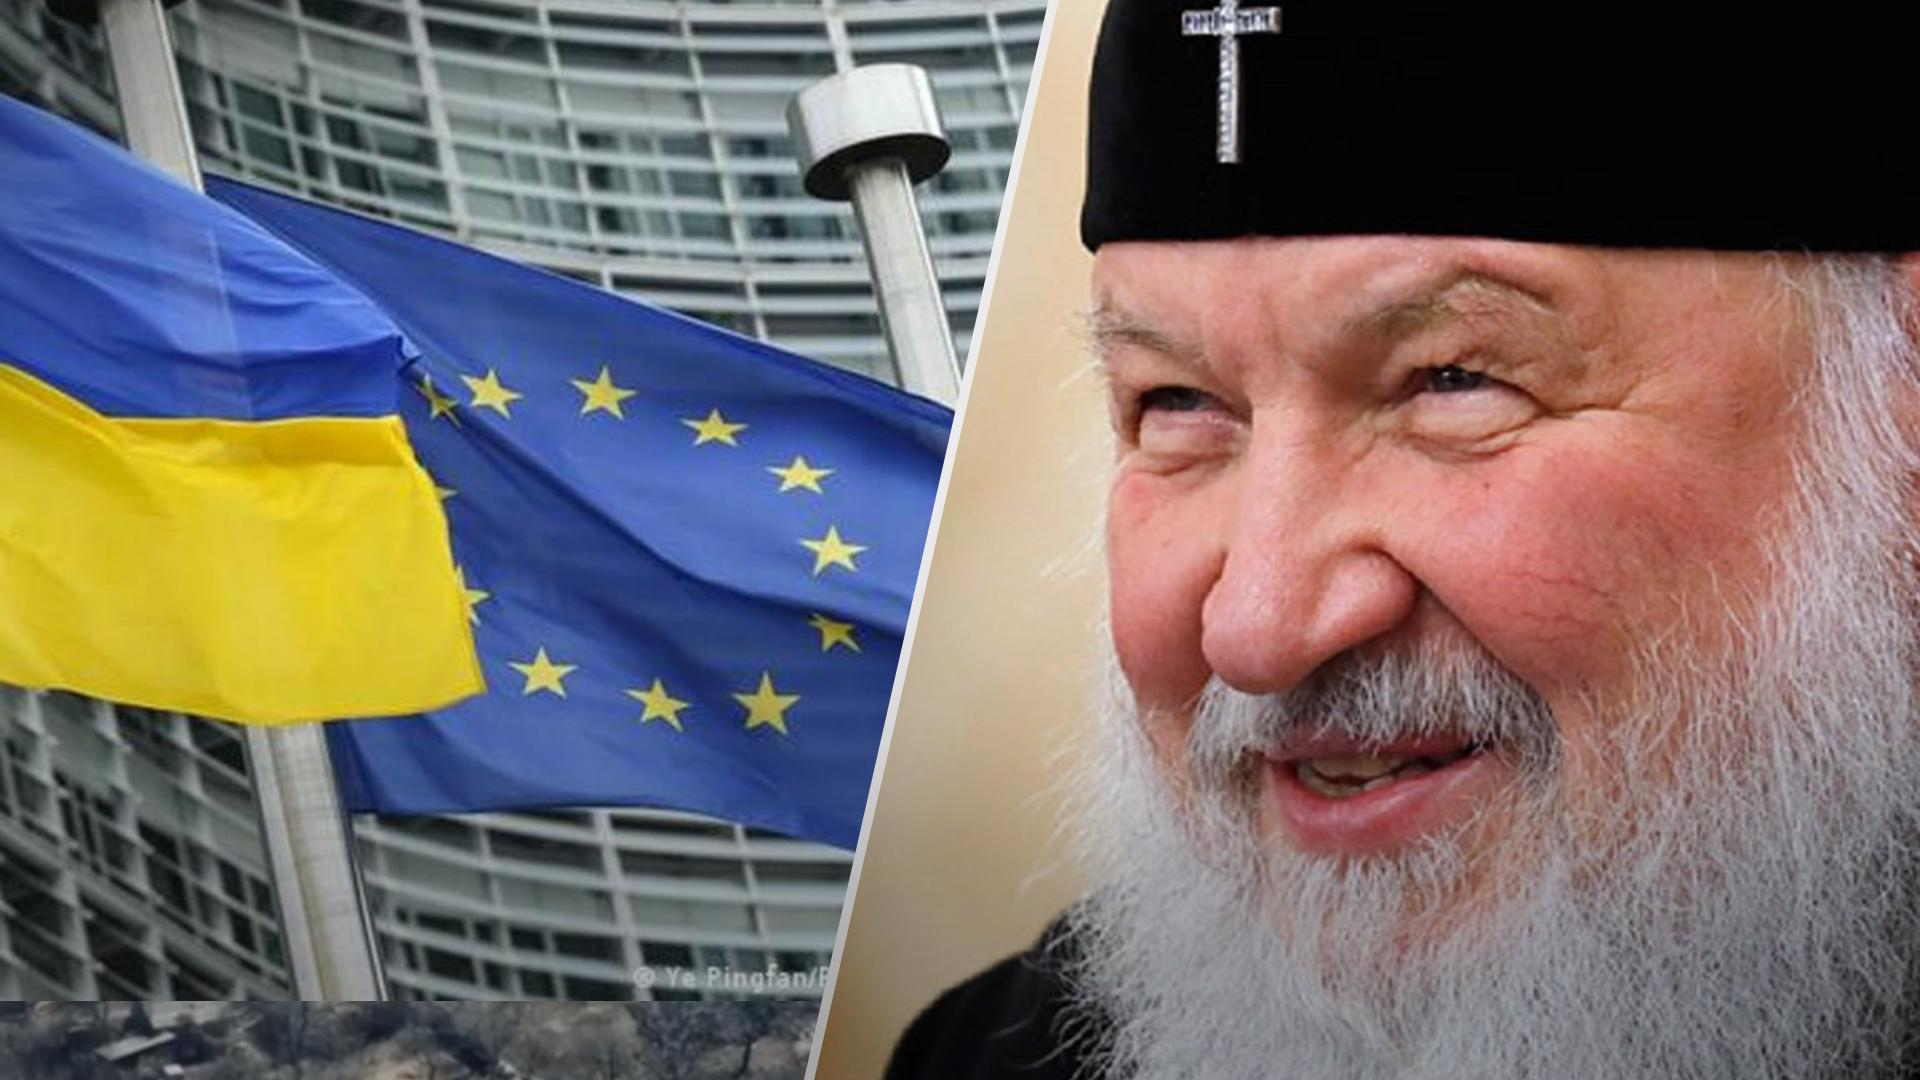 ЕС согласовал 6 пакет санкций против России, но без патриарха Кирилла в списке, – журналист